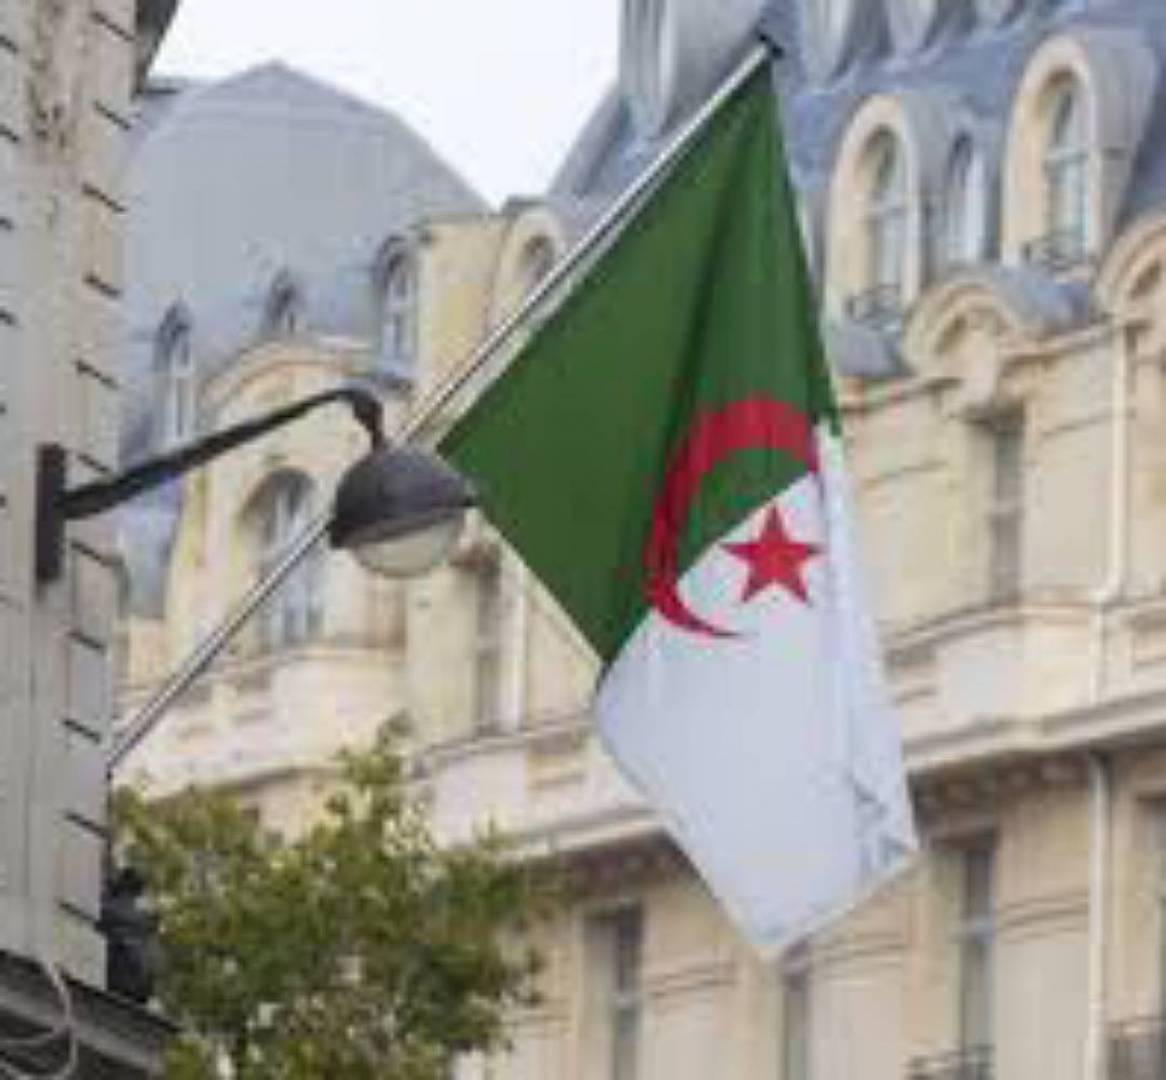 الجزائر تفتح النار على وزير خارجية إسبانيا وتبعث برسالة تهديد